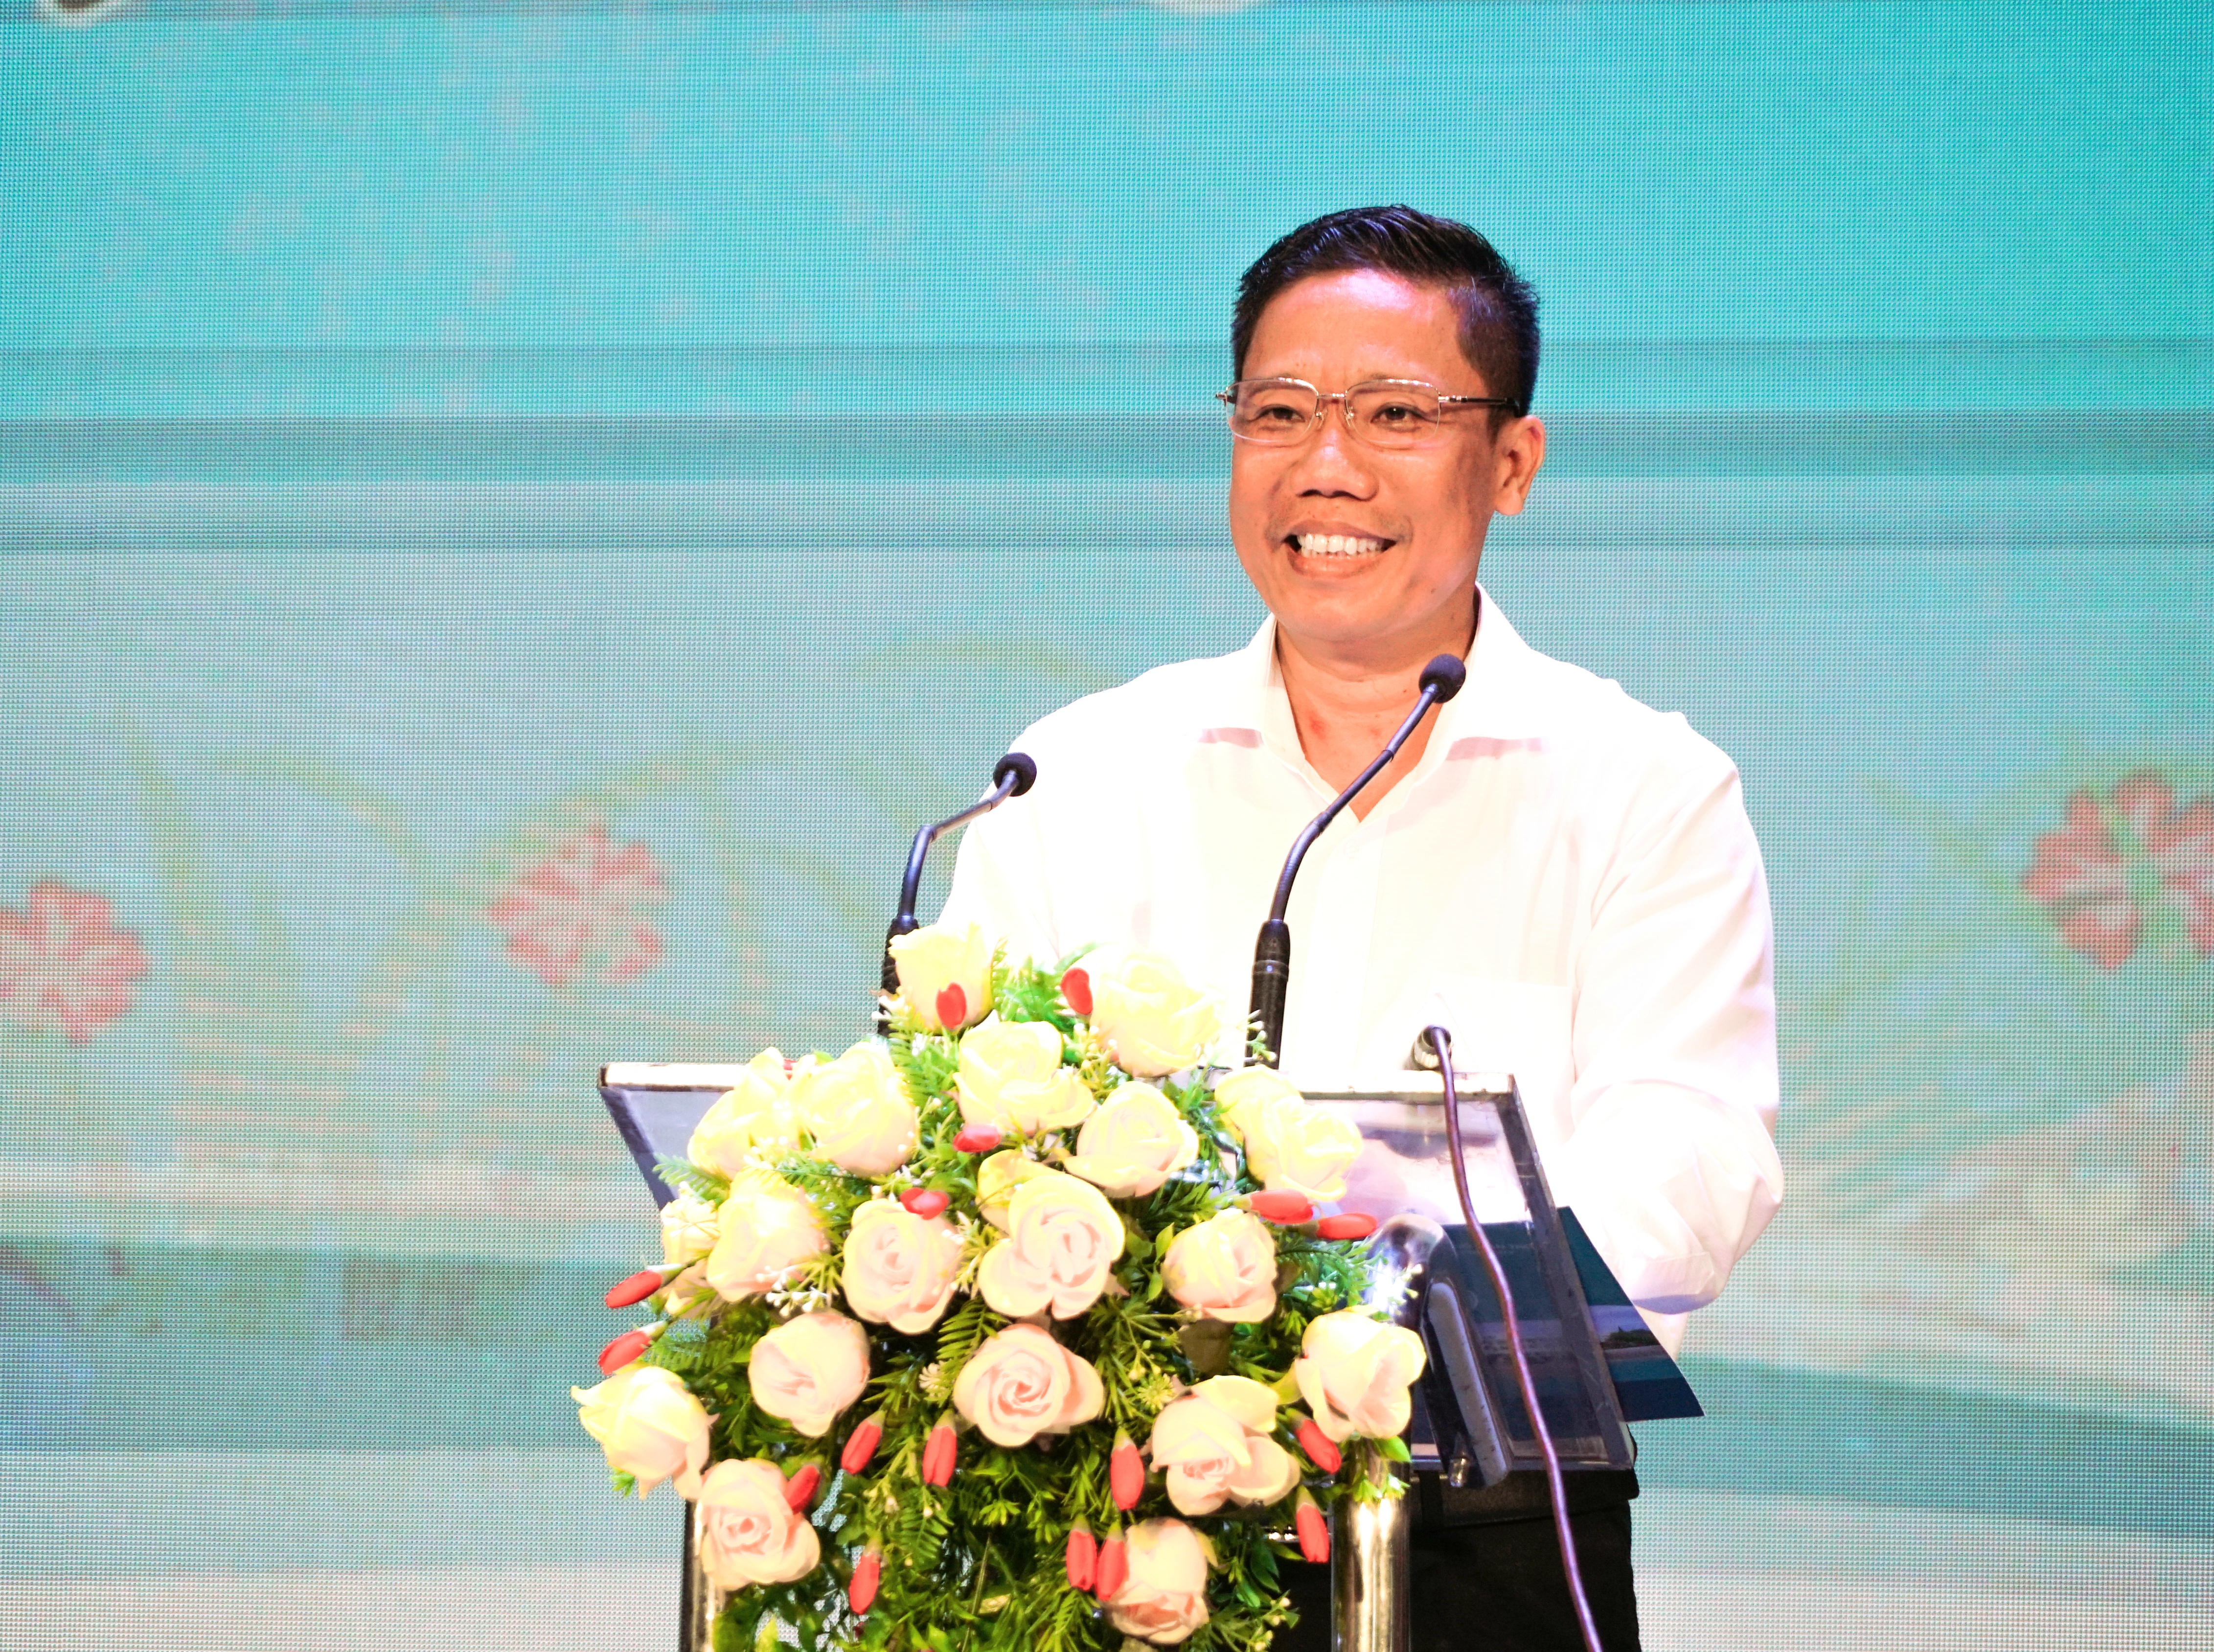 Ông Nguyễn Thực Hiện - Phó Chủ tịch UBND TP. Cần Thơ phát biểu tại buổi họp mặt.